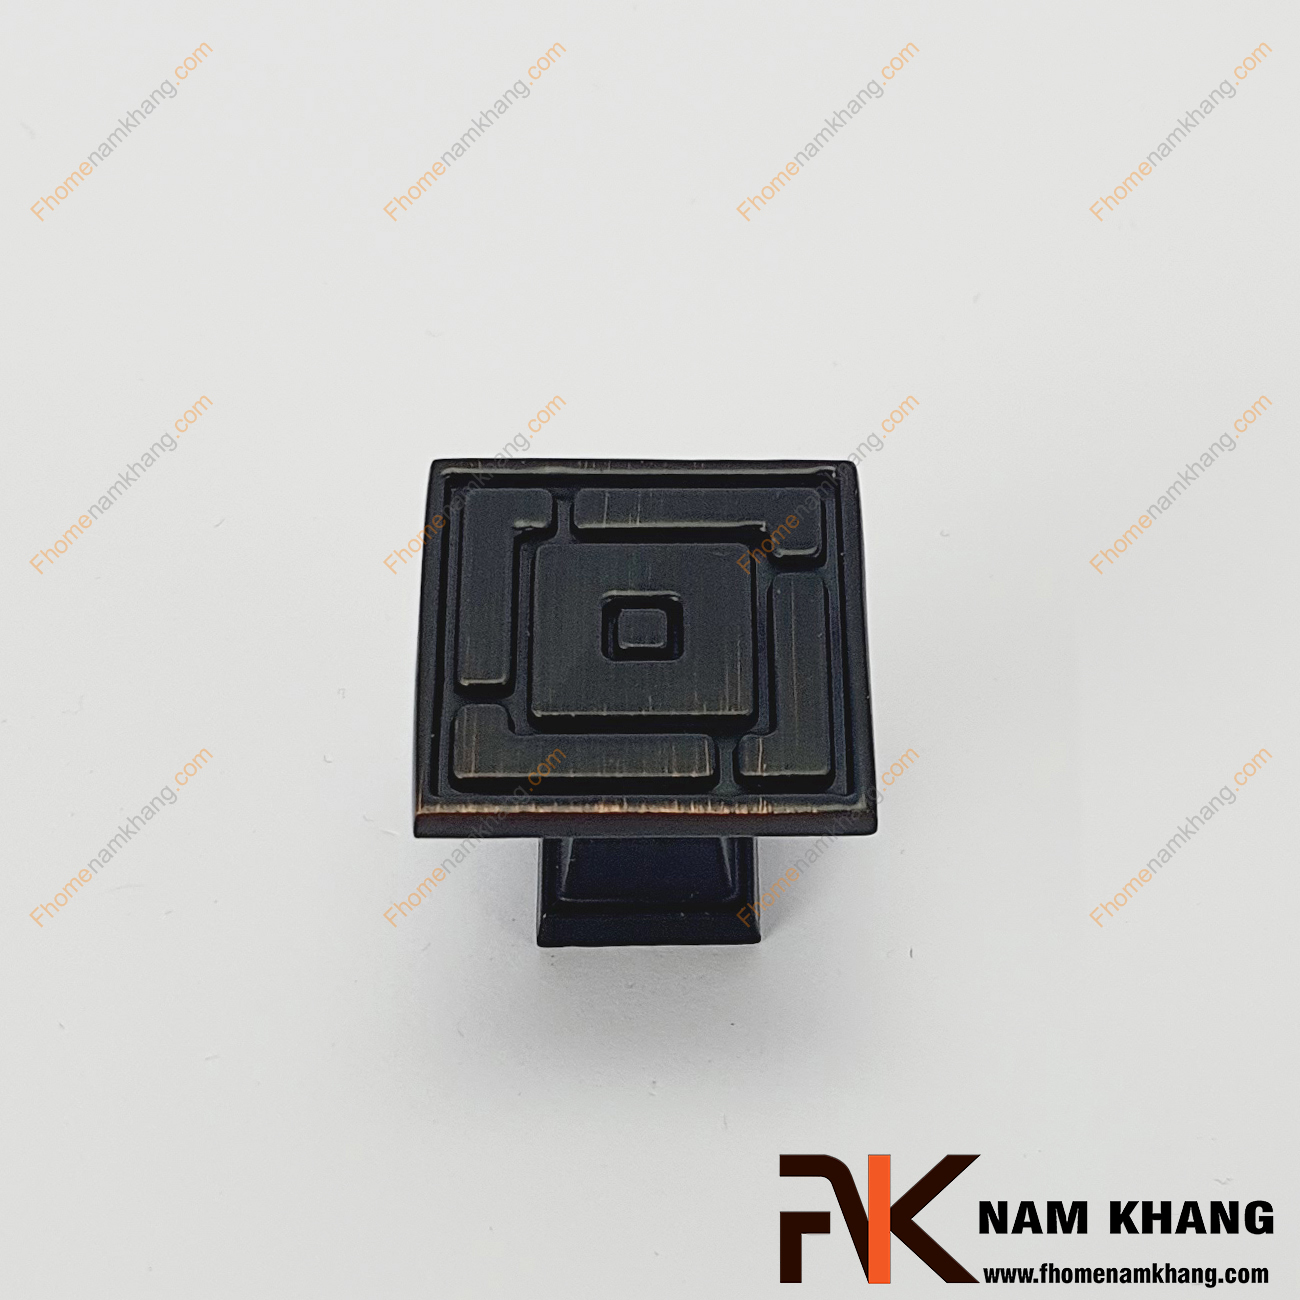 Núm cửa tủ dạng vuông cổ điển màu đen viền hồng NK289-DH, sản phẩm phụ kiện tủ kệ mang đậm chất cổ điển với các họa tiết và đường nét vuông khối nổi bật.